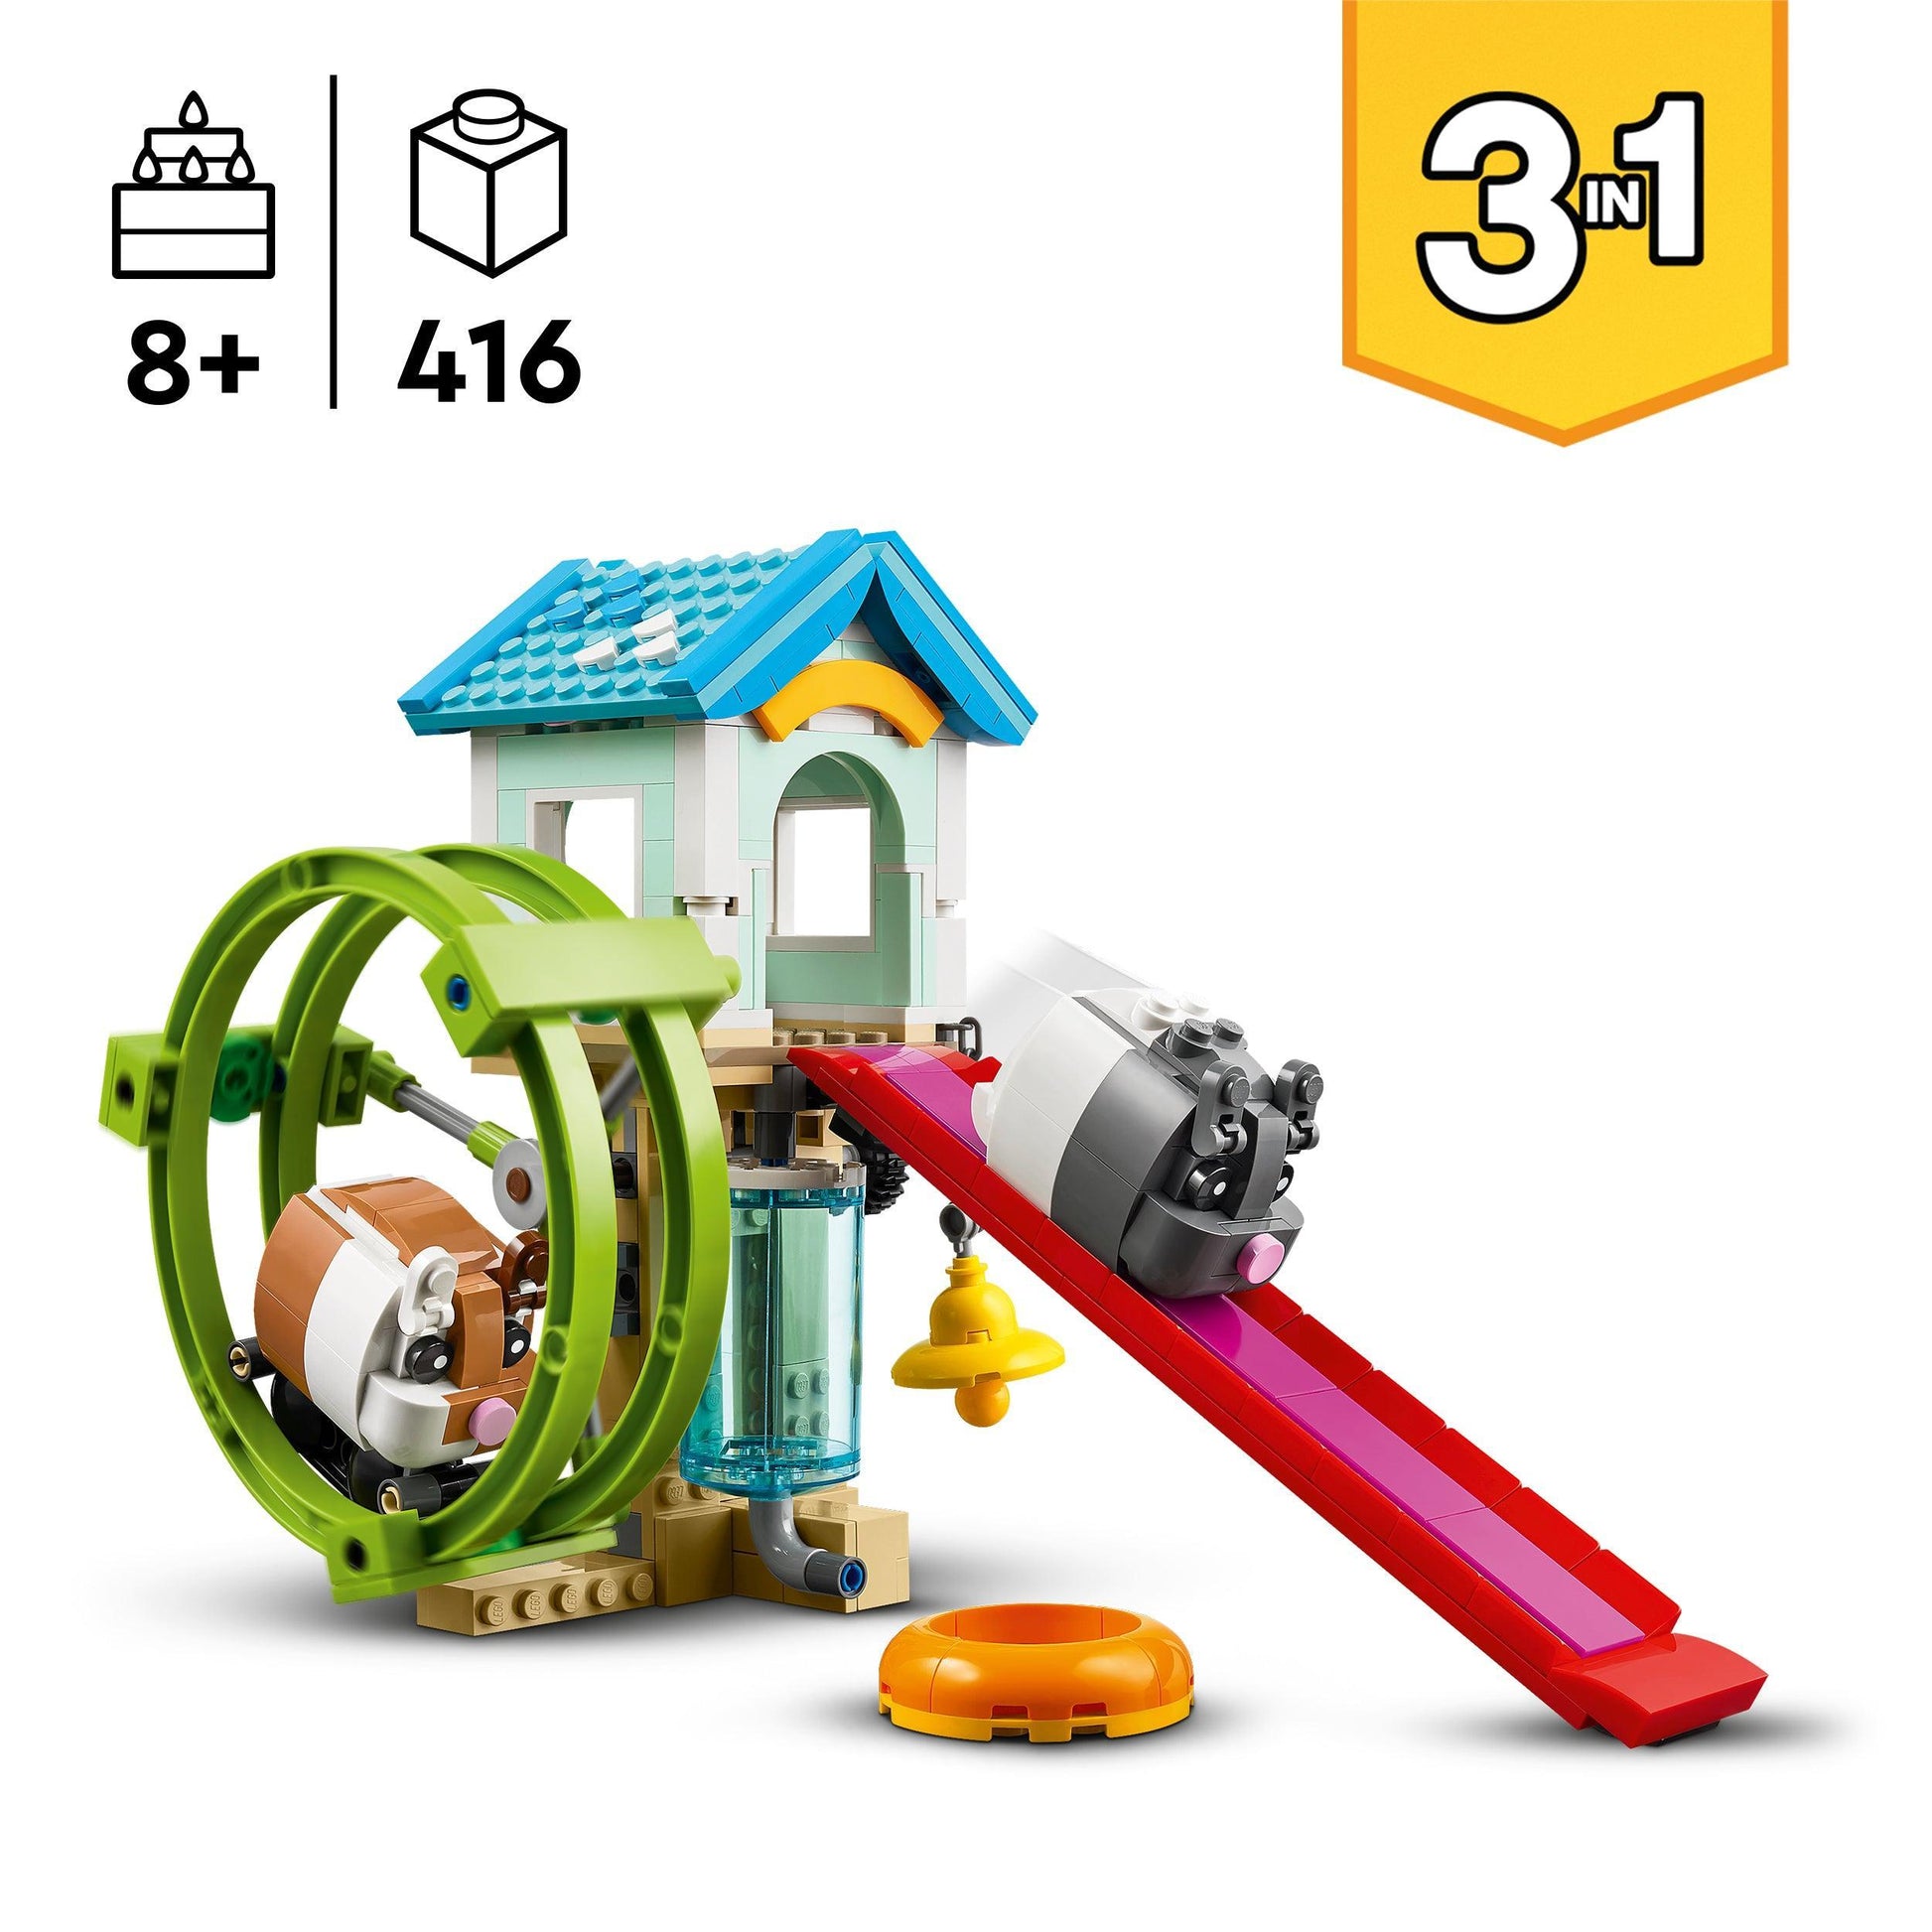 LEGO Hamsterwiel 31155 Creator LEGO CREATOR 3 IN 1 @ 2TTOYS LEGO €. 29.99